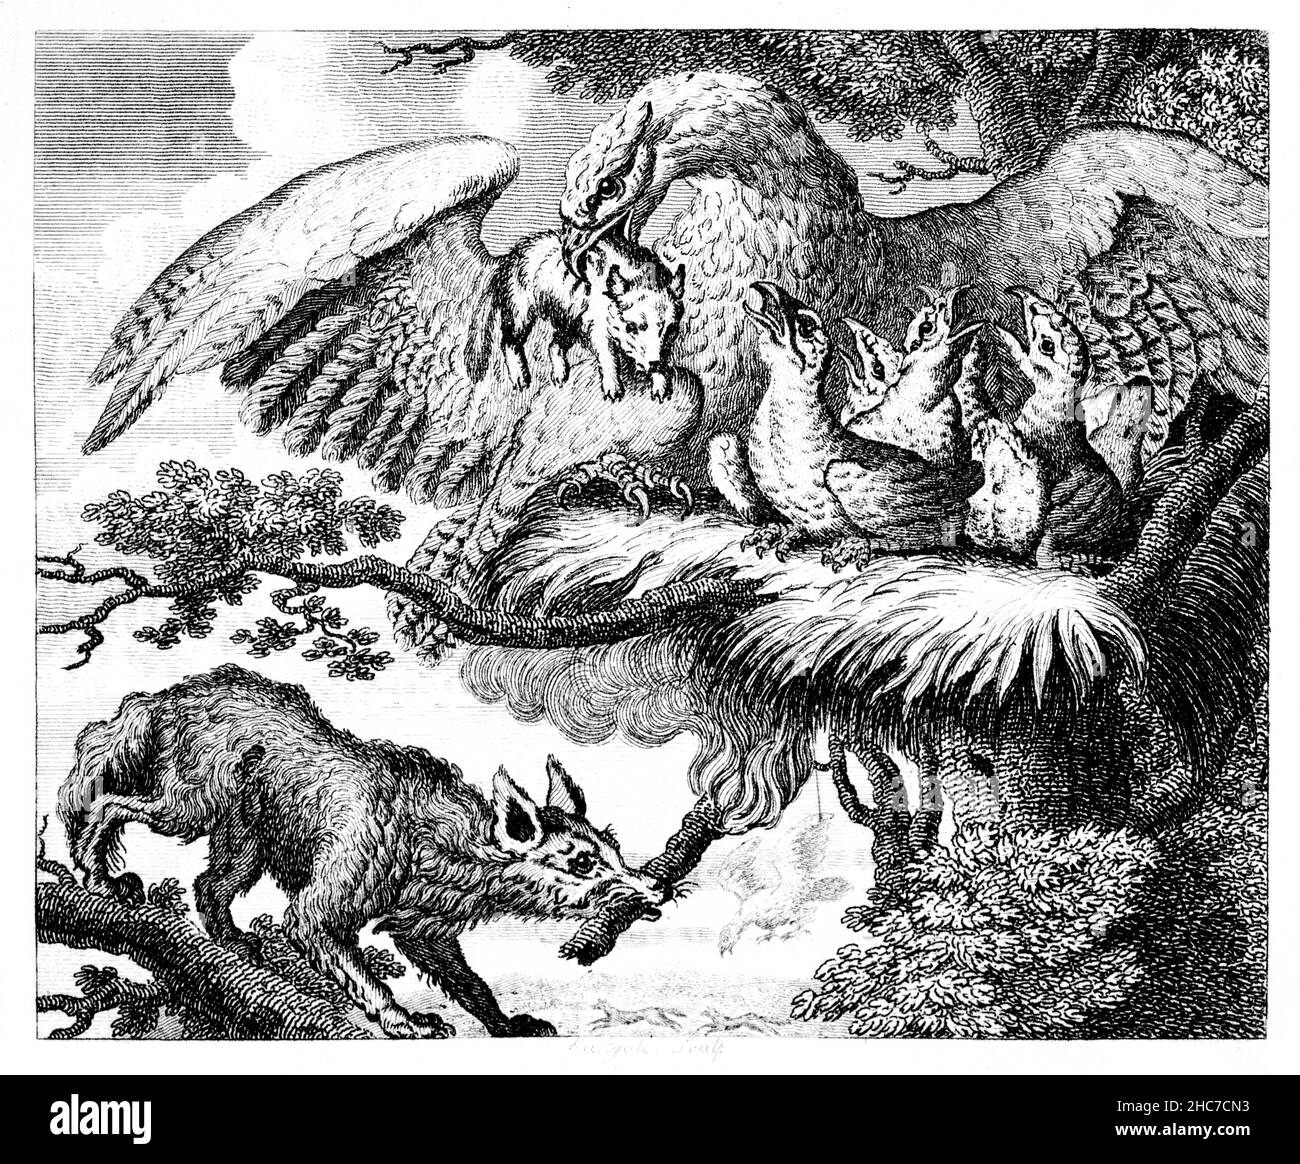 Eingravierte Illustration des Adlers und des Fuchses, eine Geschichte der Freundschaft, verraten und verunglimpft, aus der ersten Ausgabe von Stockdale’s Aesop’s Fables von 1793 Stockfoto